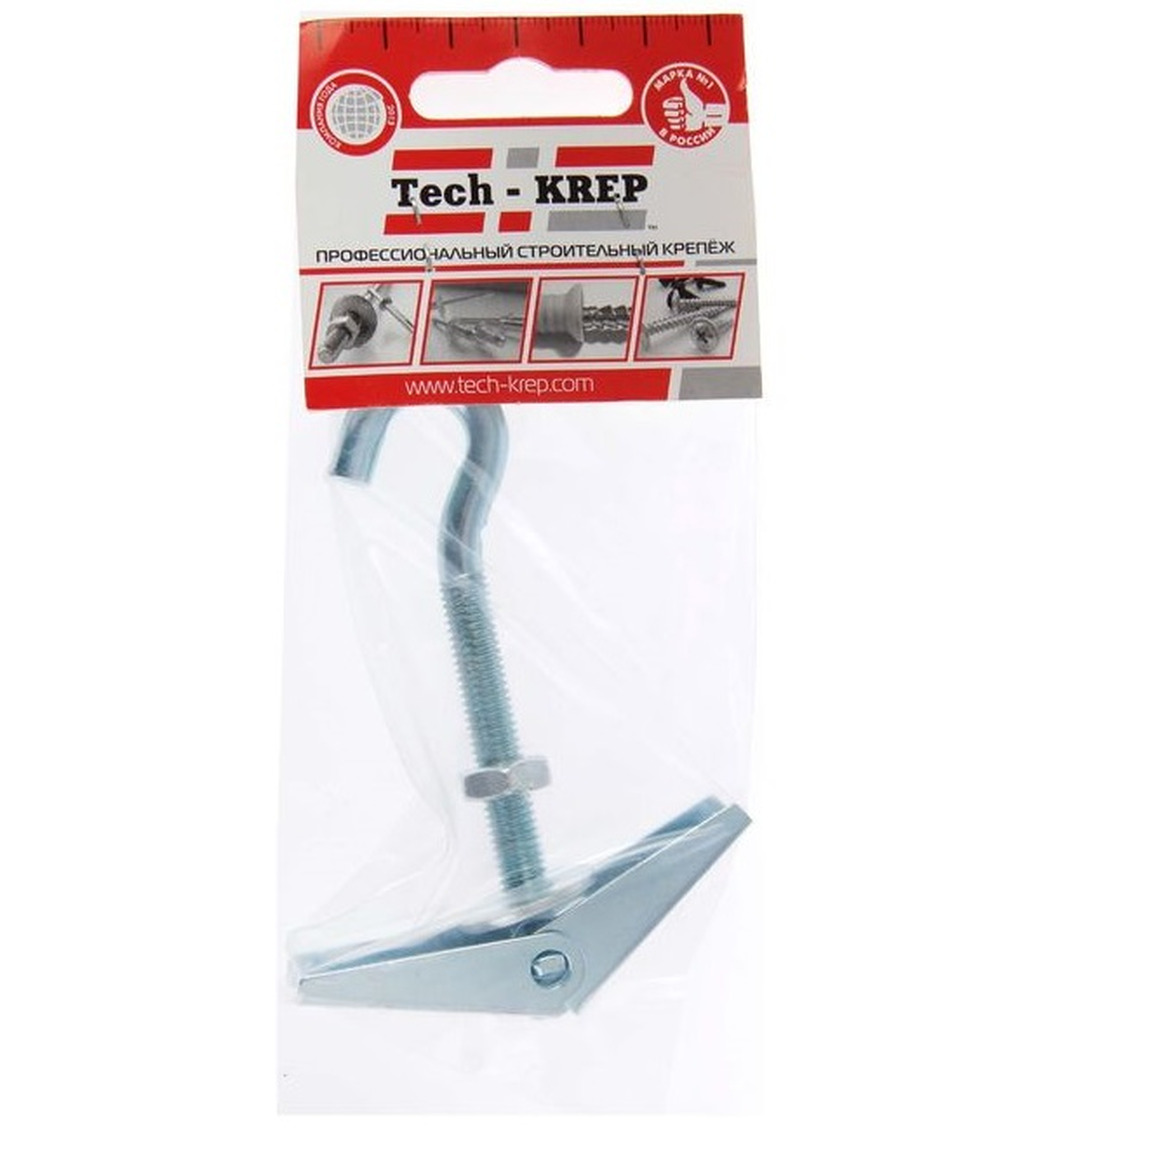 Анкер складной пружинный с крюком М8 (1 шт) - пакет Tech-Krep 103901